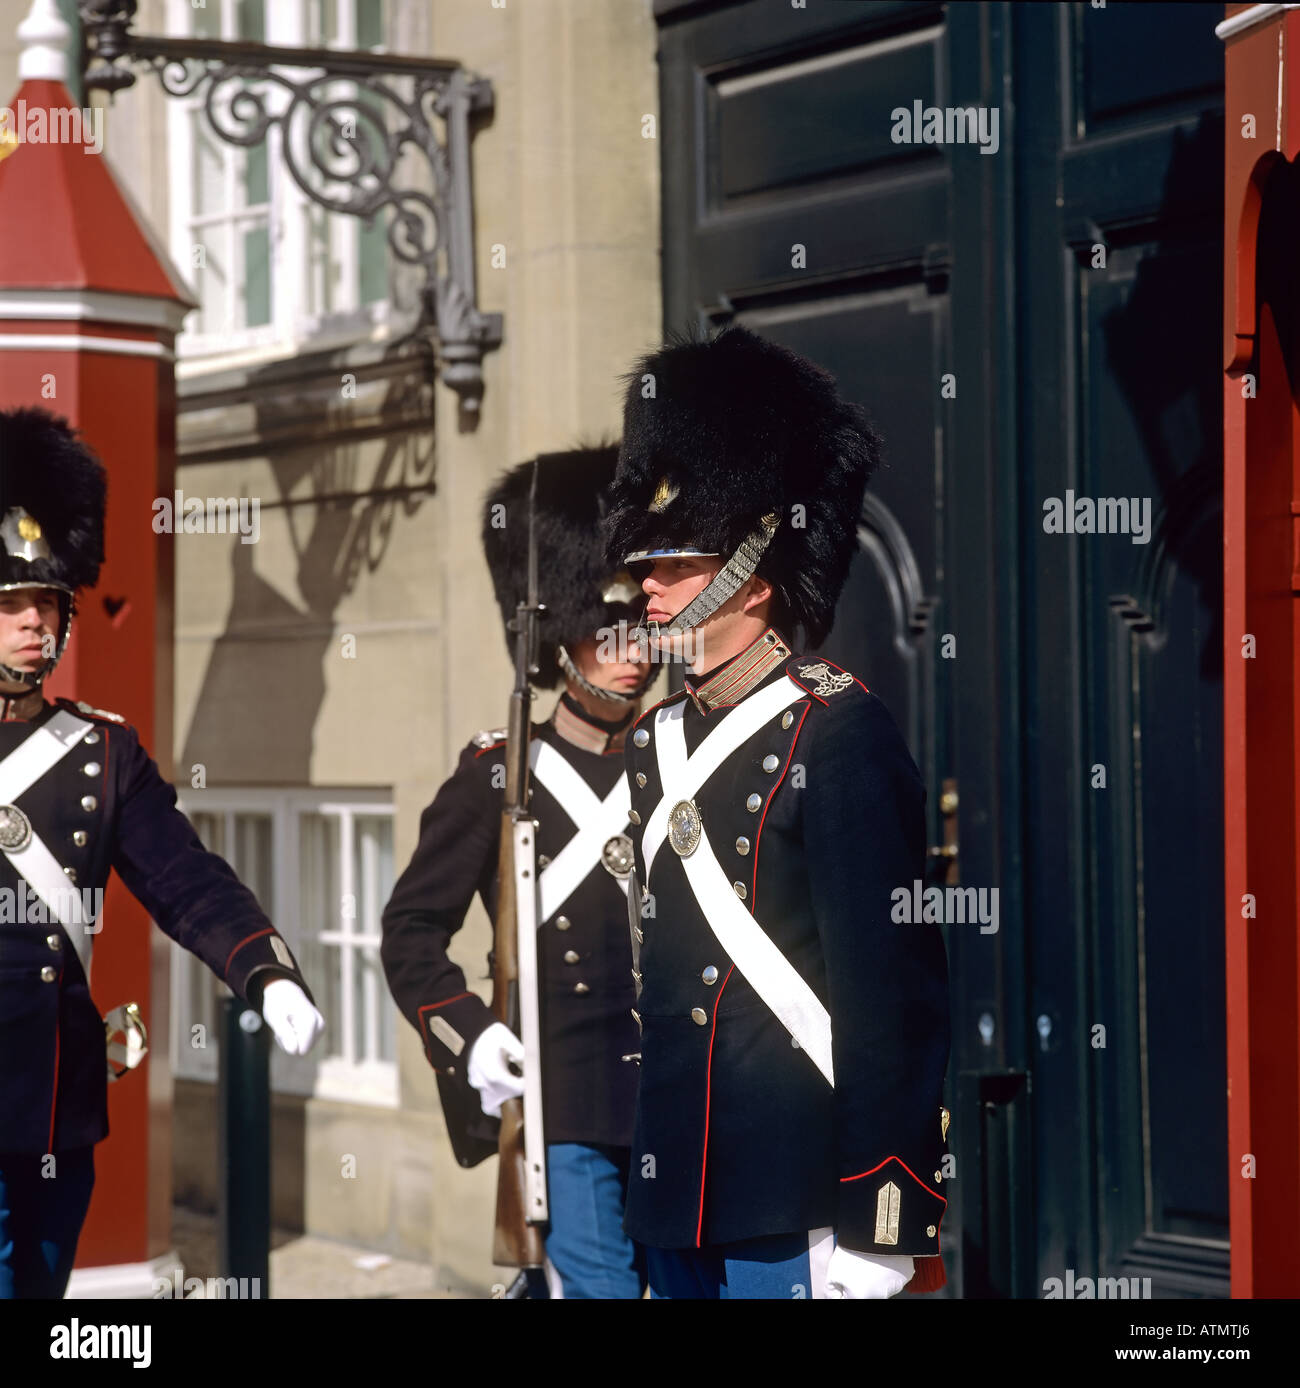 Royal life guards, Amalienborg palace, Copenhagen, Denmark Stock Photo